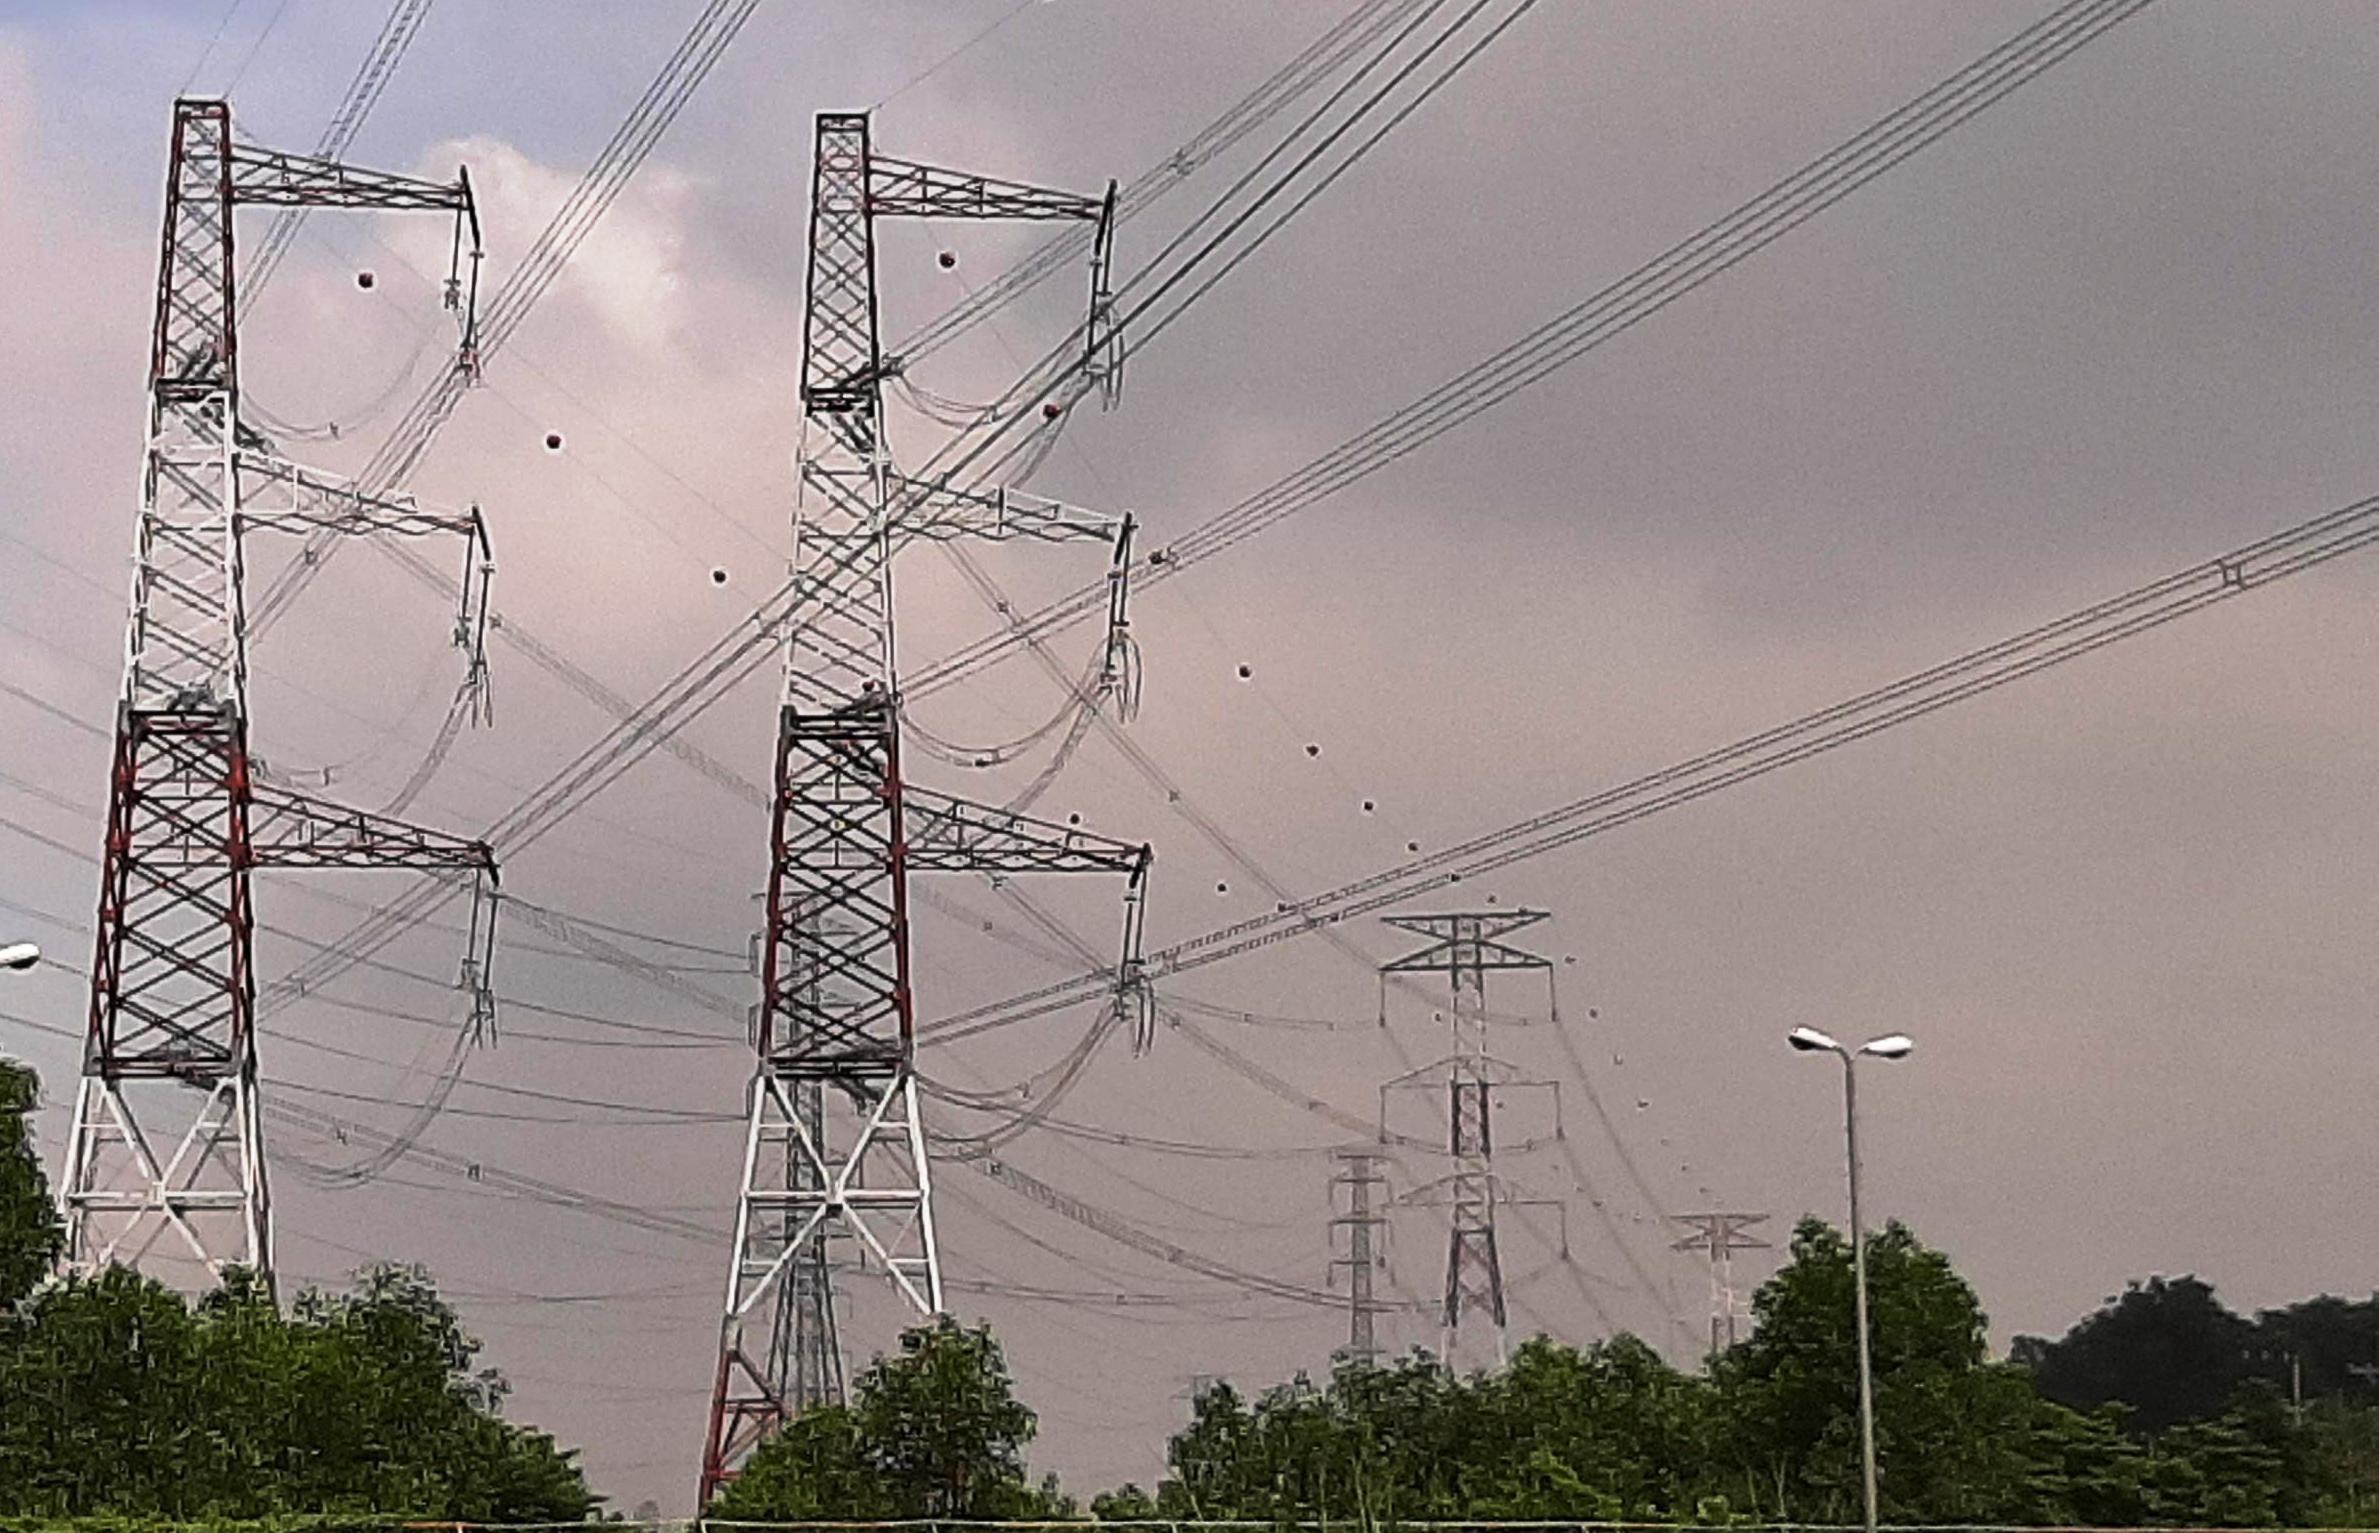 Đường dây 500kV đấu nối nhà máy Nhiệt điện Nghi Sơn 2 vào hệ thống điện Quốc gia